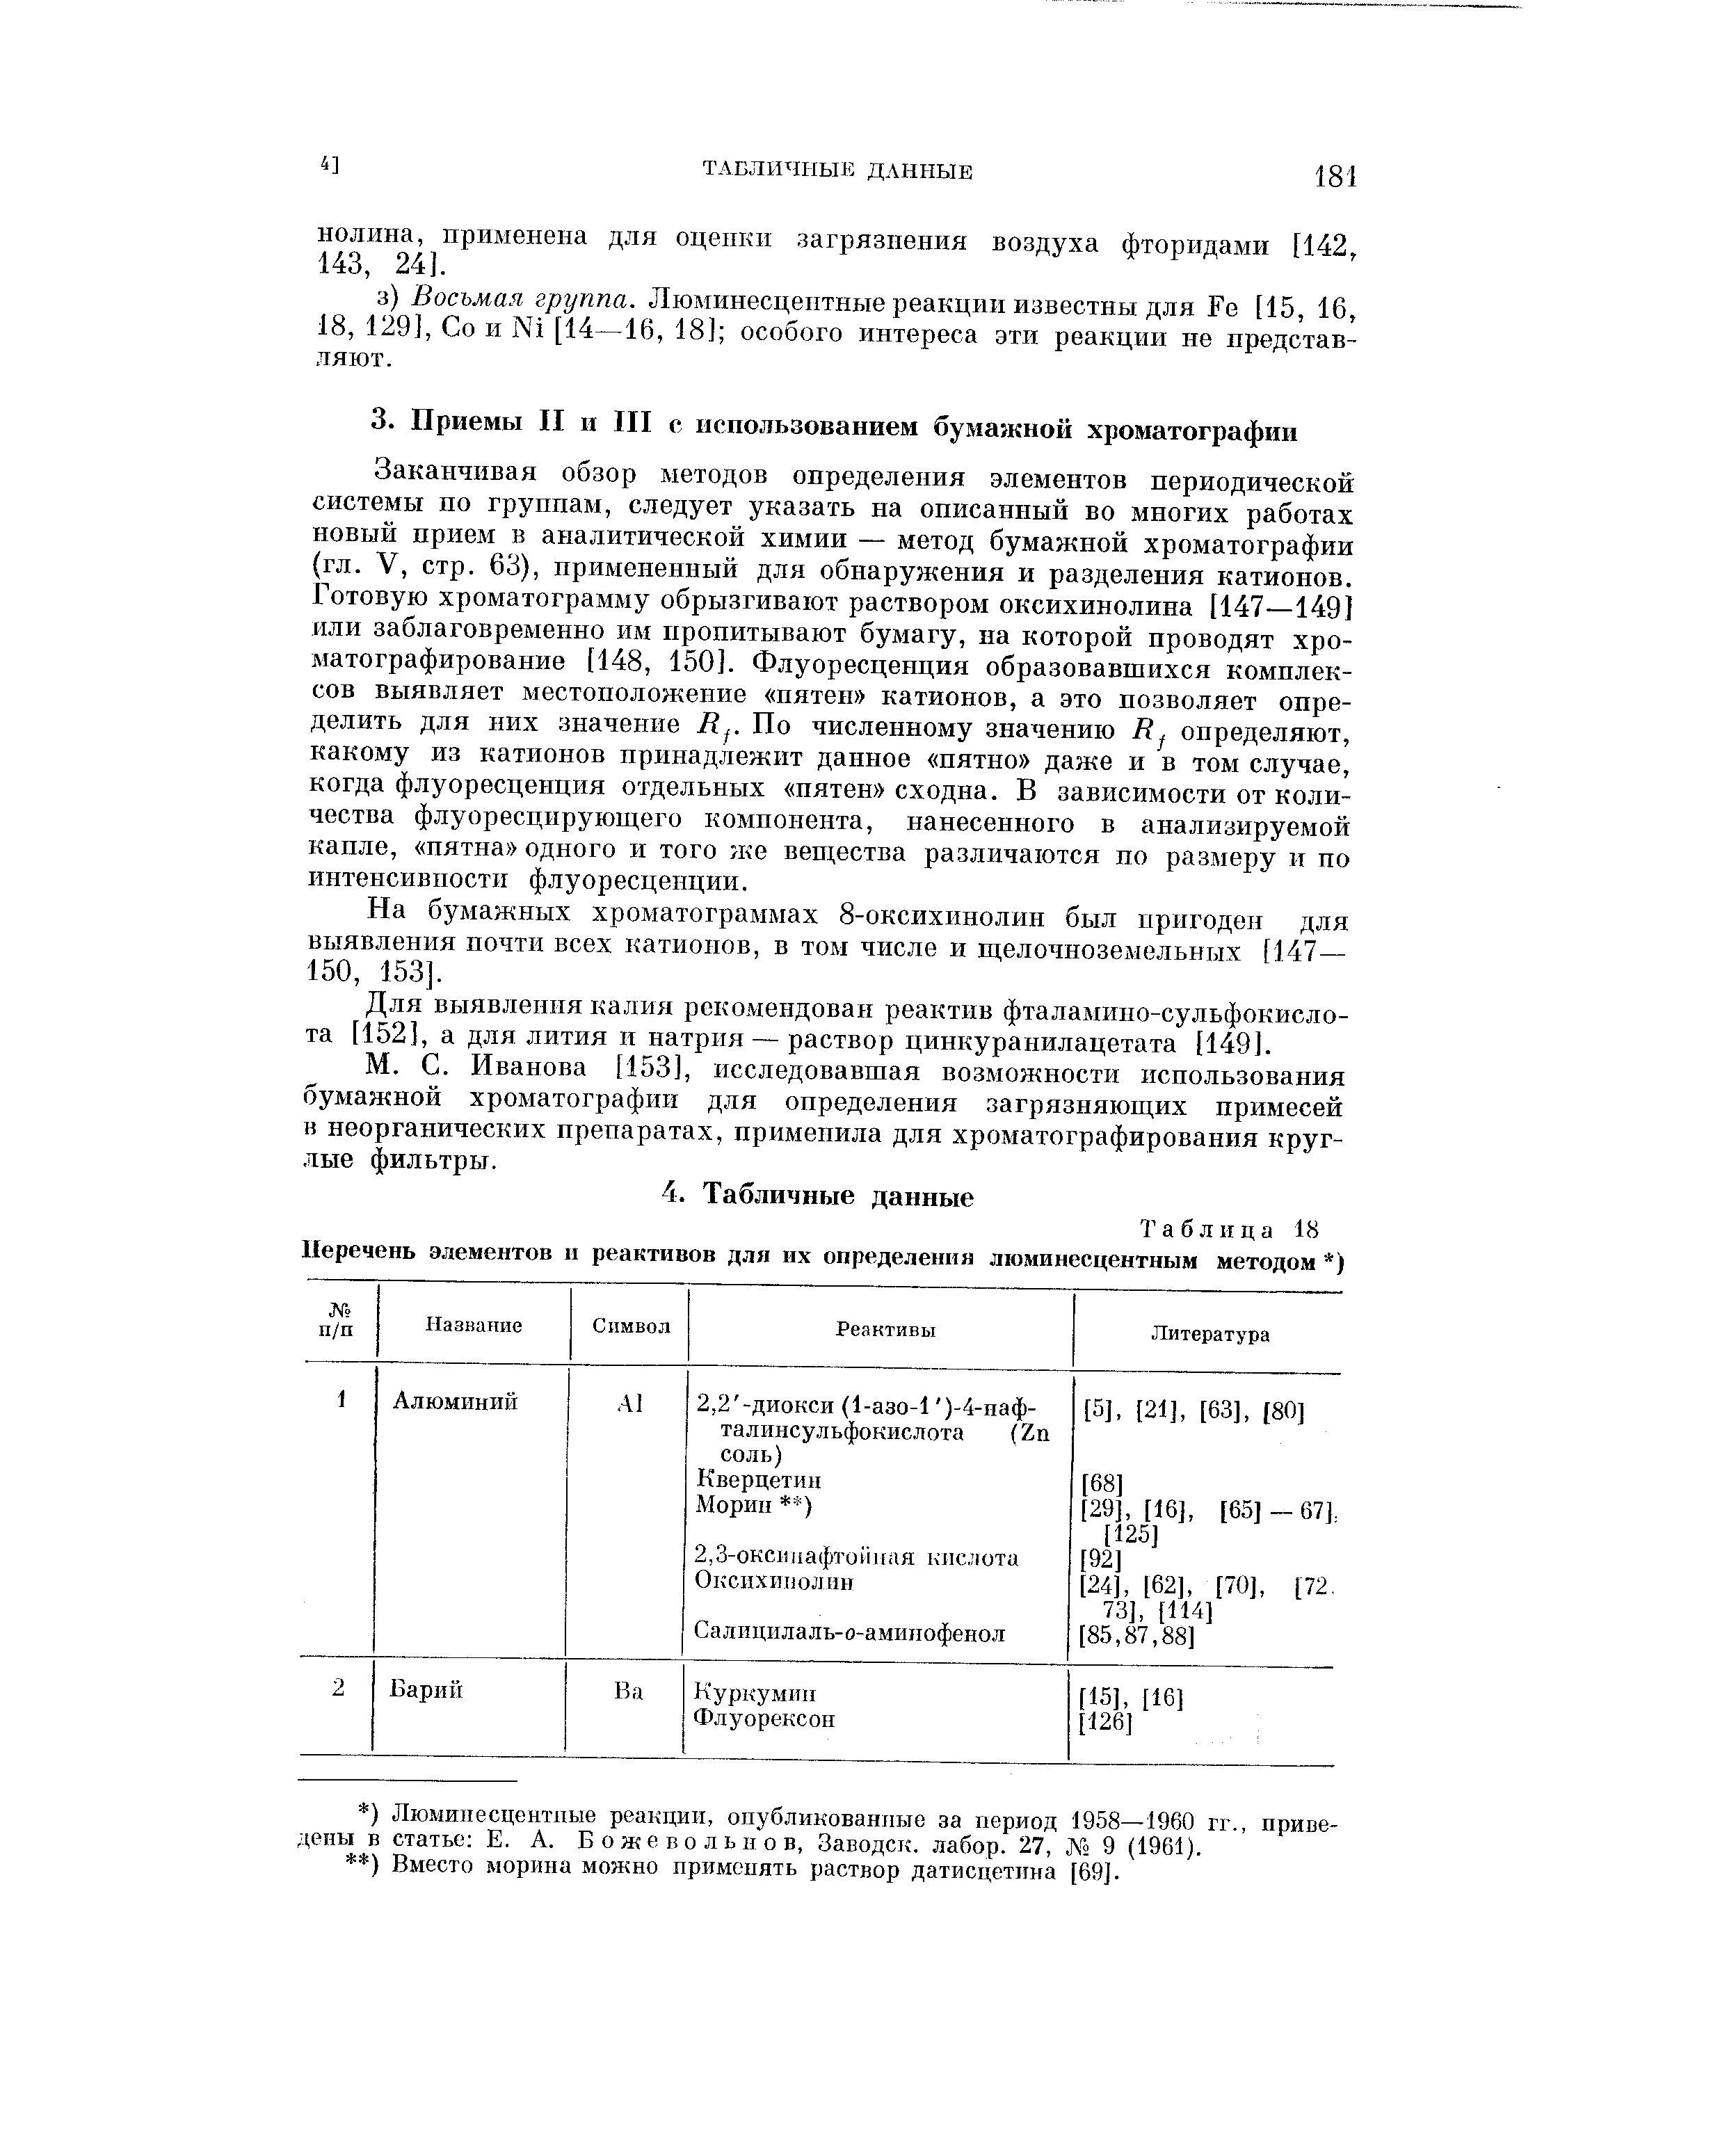 На бумажных хроматограммах 8-оксихинолин был нригоден для выявления почти всех катионов, в том числе и щелочноземельных [147— 150, 153].